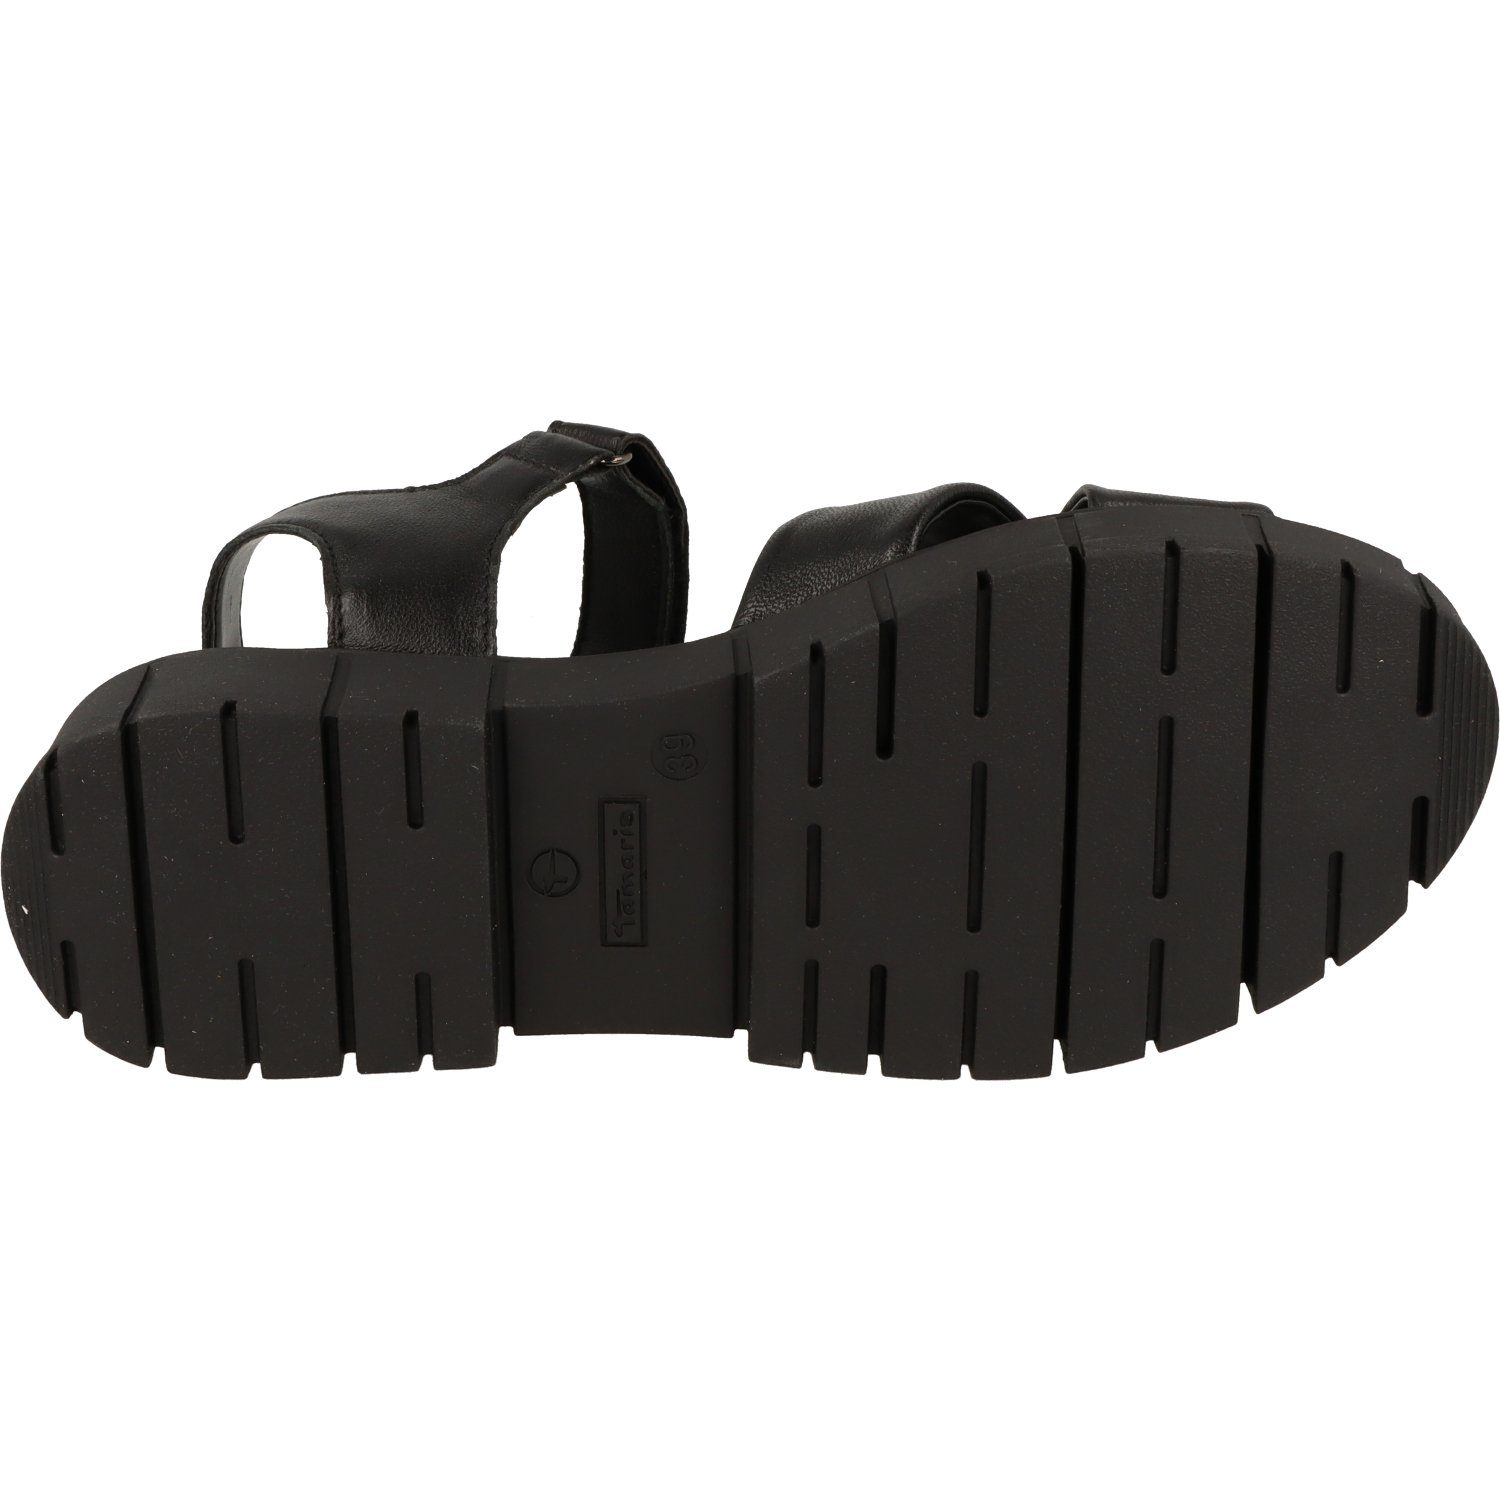 Schuhe Tamaris Klett Komfort 1-28242-20 Plateausandale Leder Black Damen Sandalette Leather